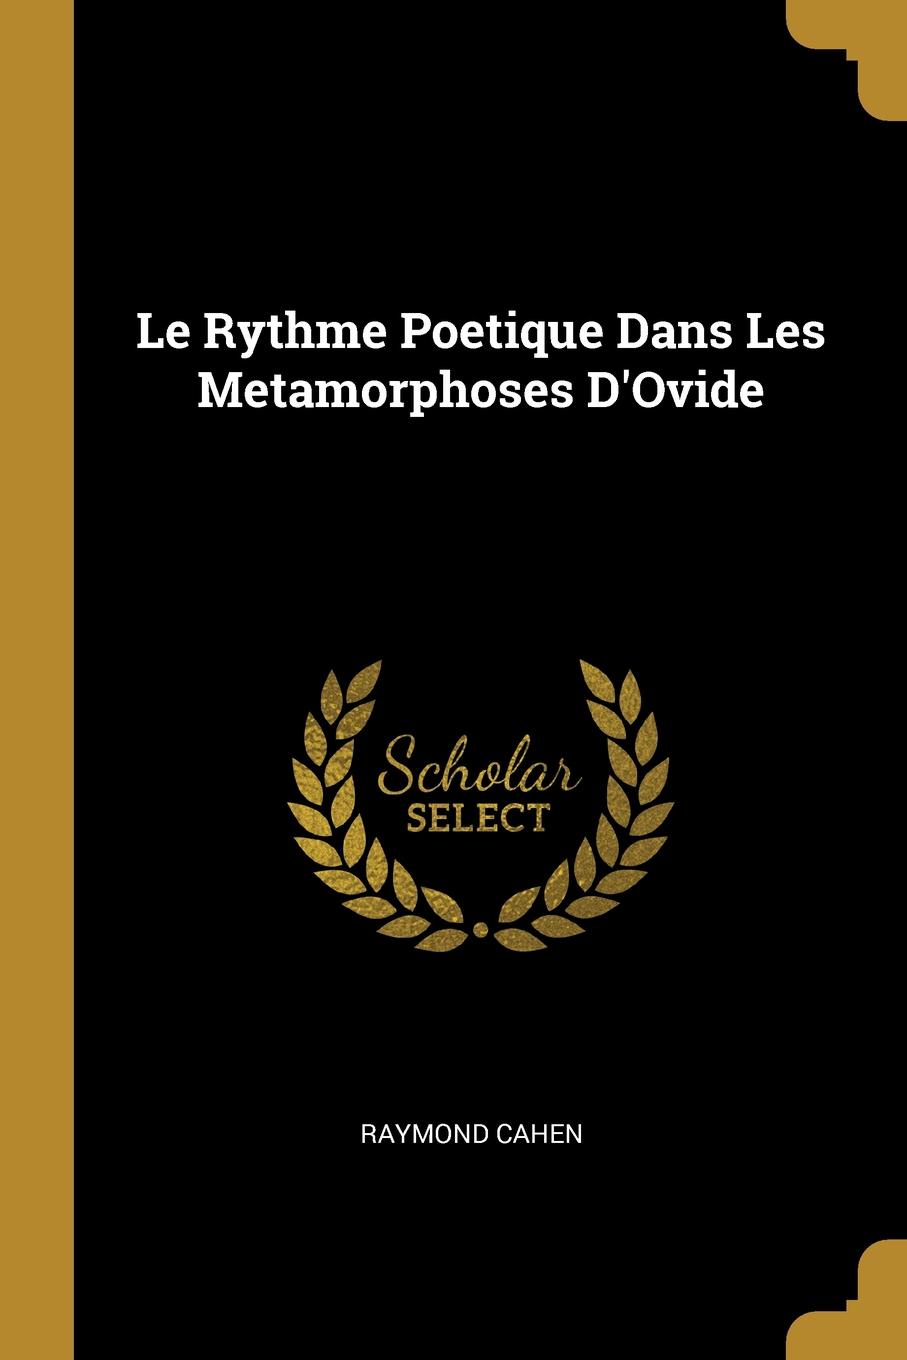 Le Rythme Poetique Dans Les Metamorphoses D.Ovide